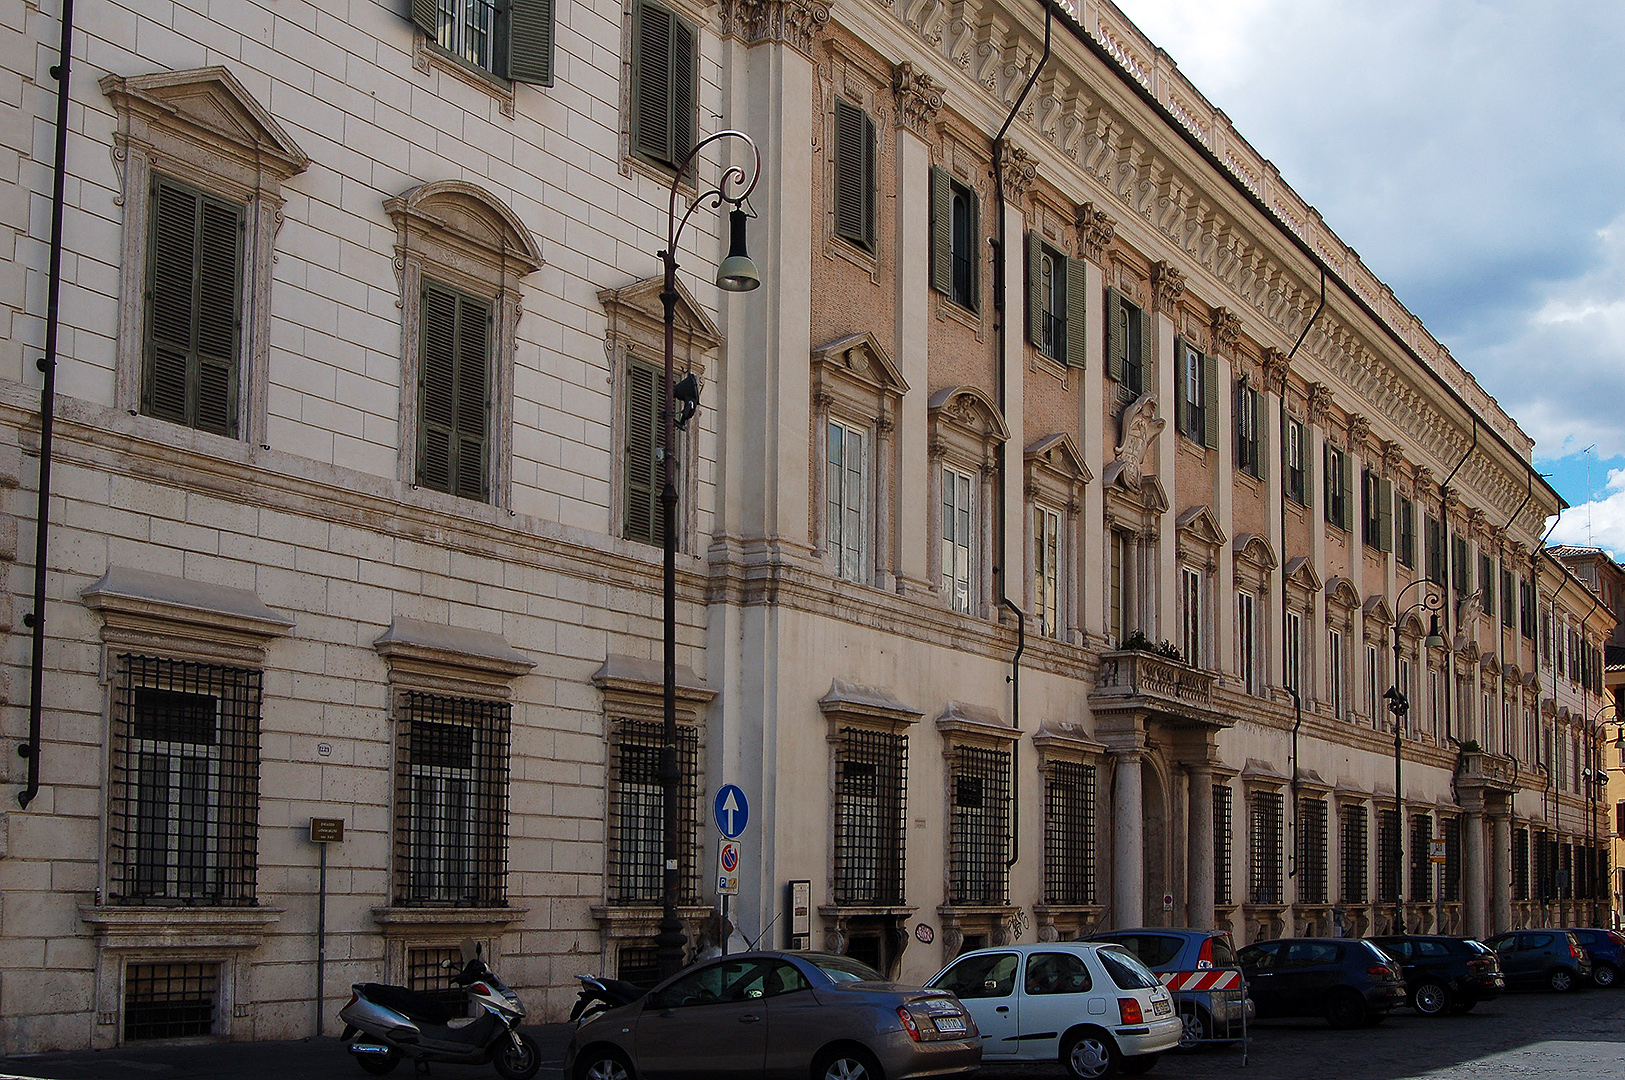 Palazzo Odescalchi, Rome, Itali., Palazzo Odescalchi, Rome, Italy.